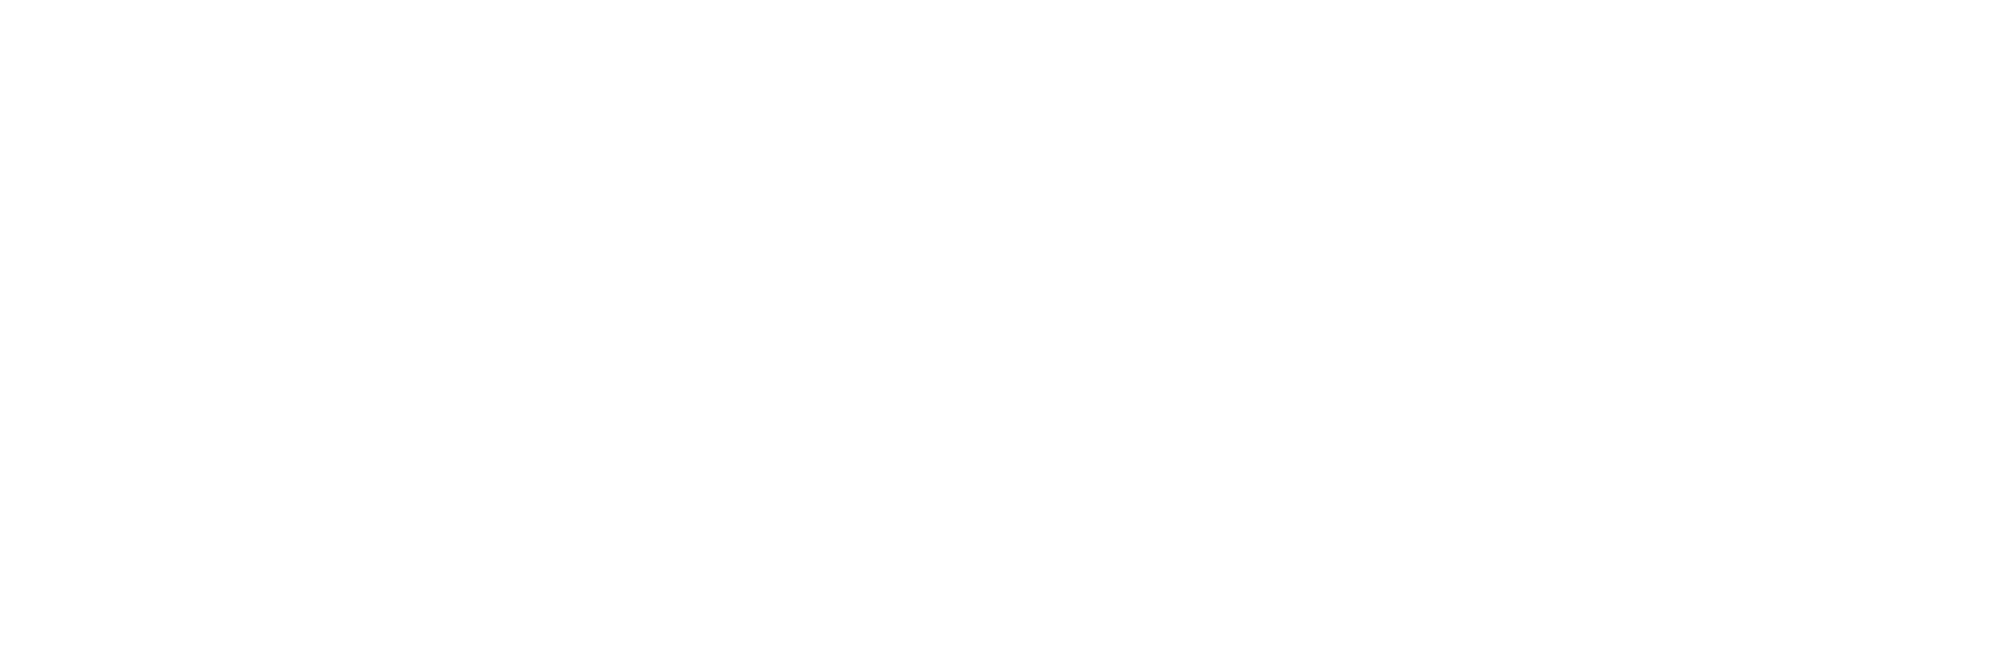 Lufthansa_Weißgrau